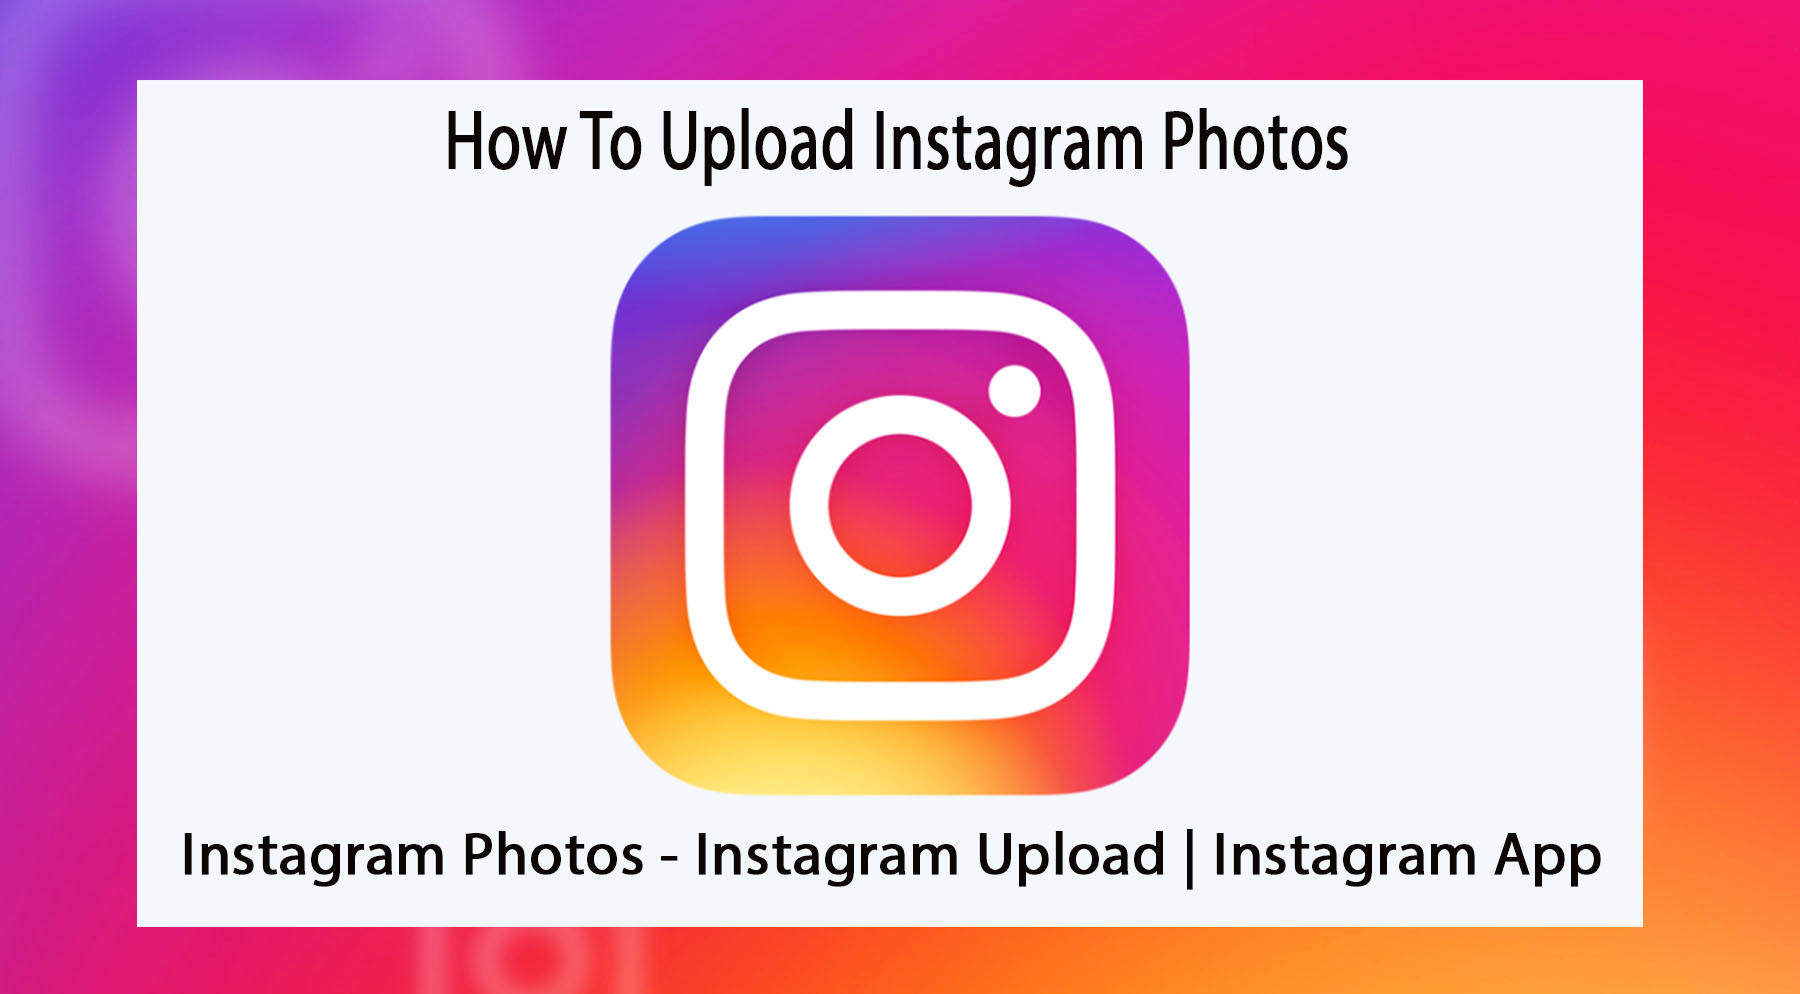 Instagram Photos - Instagram Upload | Instagram App